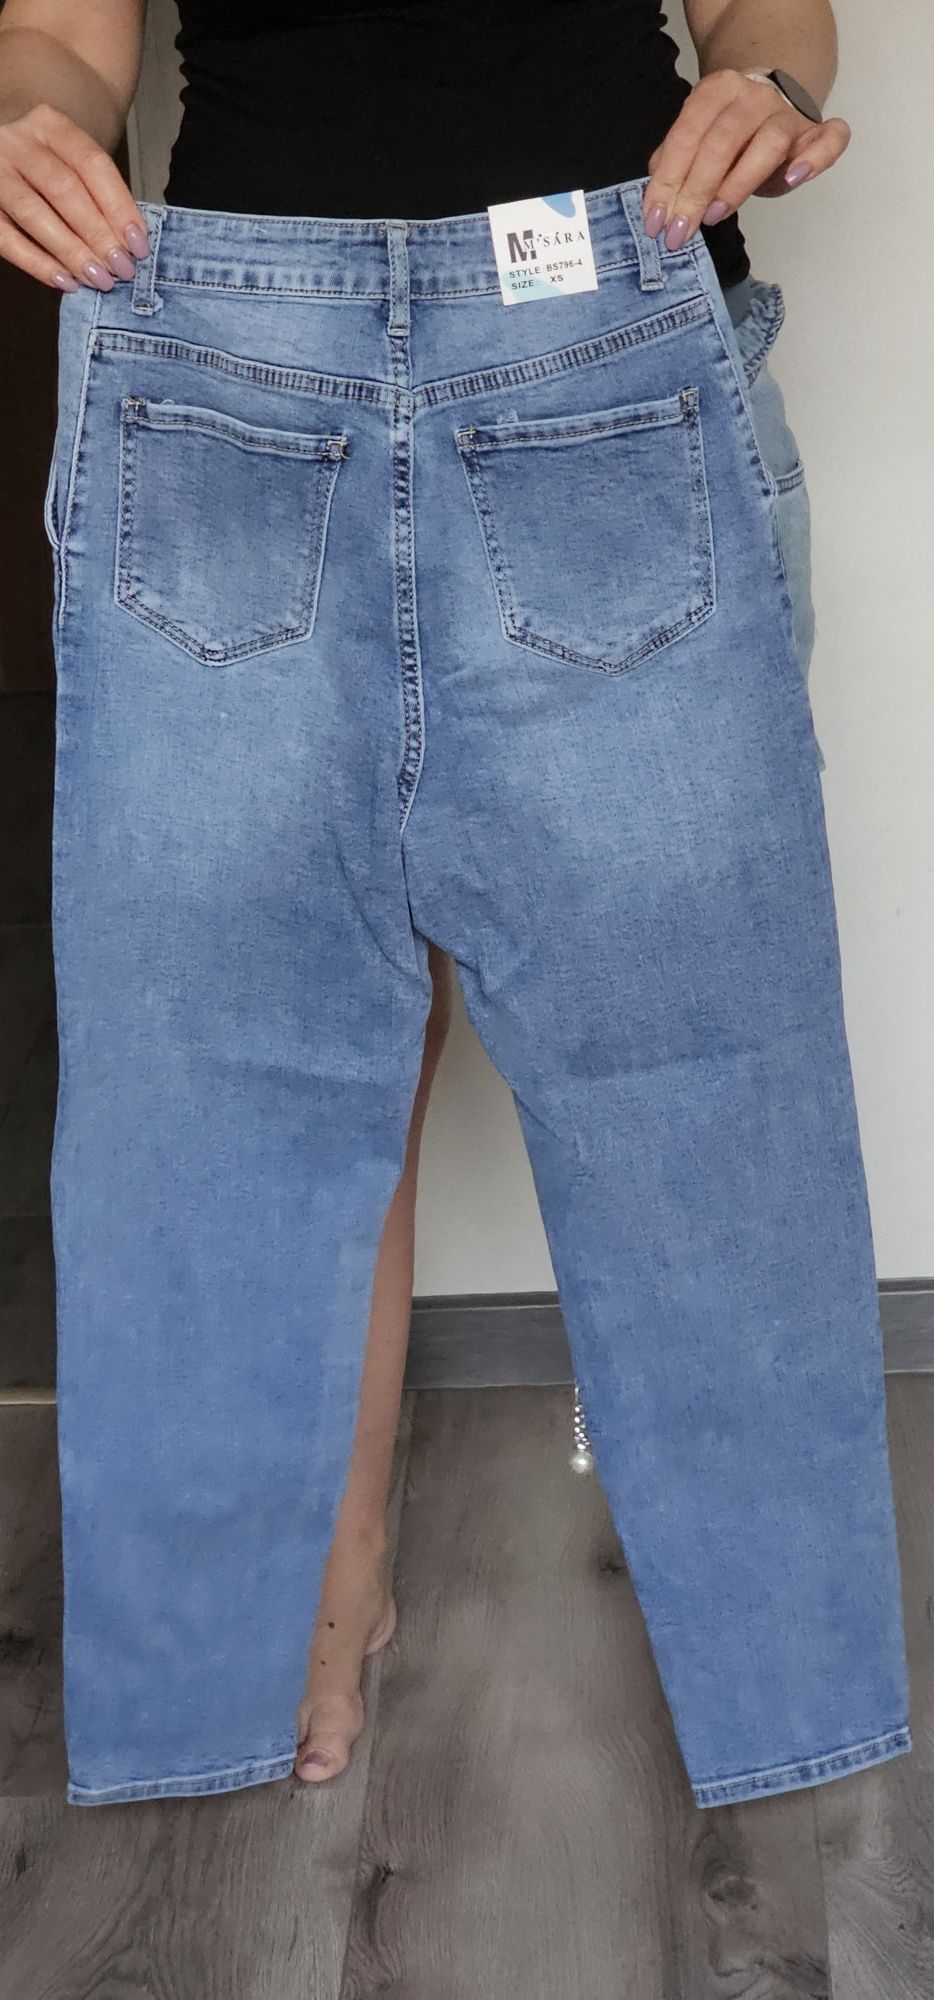 Spodnie jeansowe msara xs/s